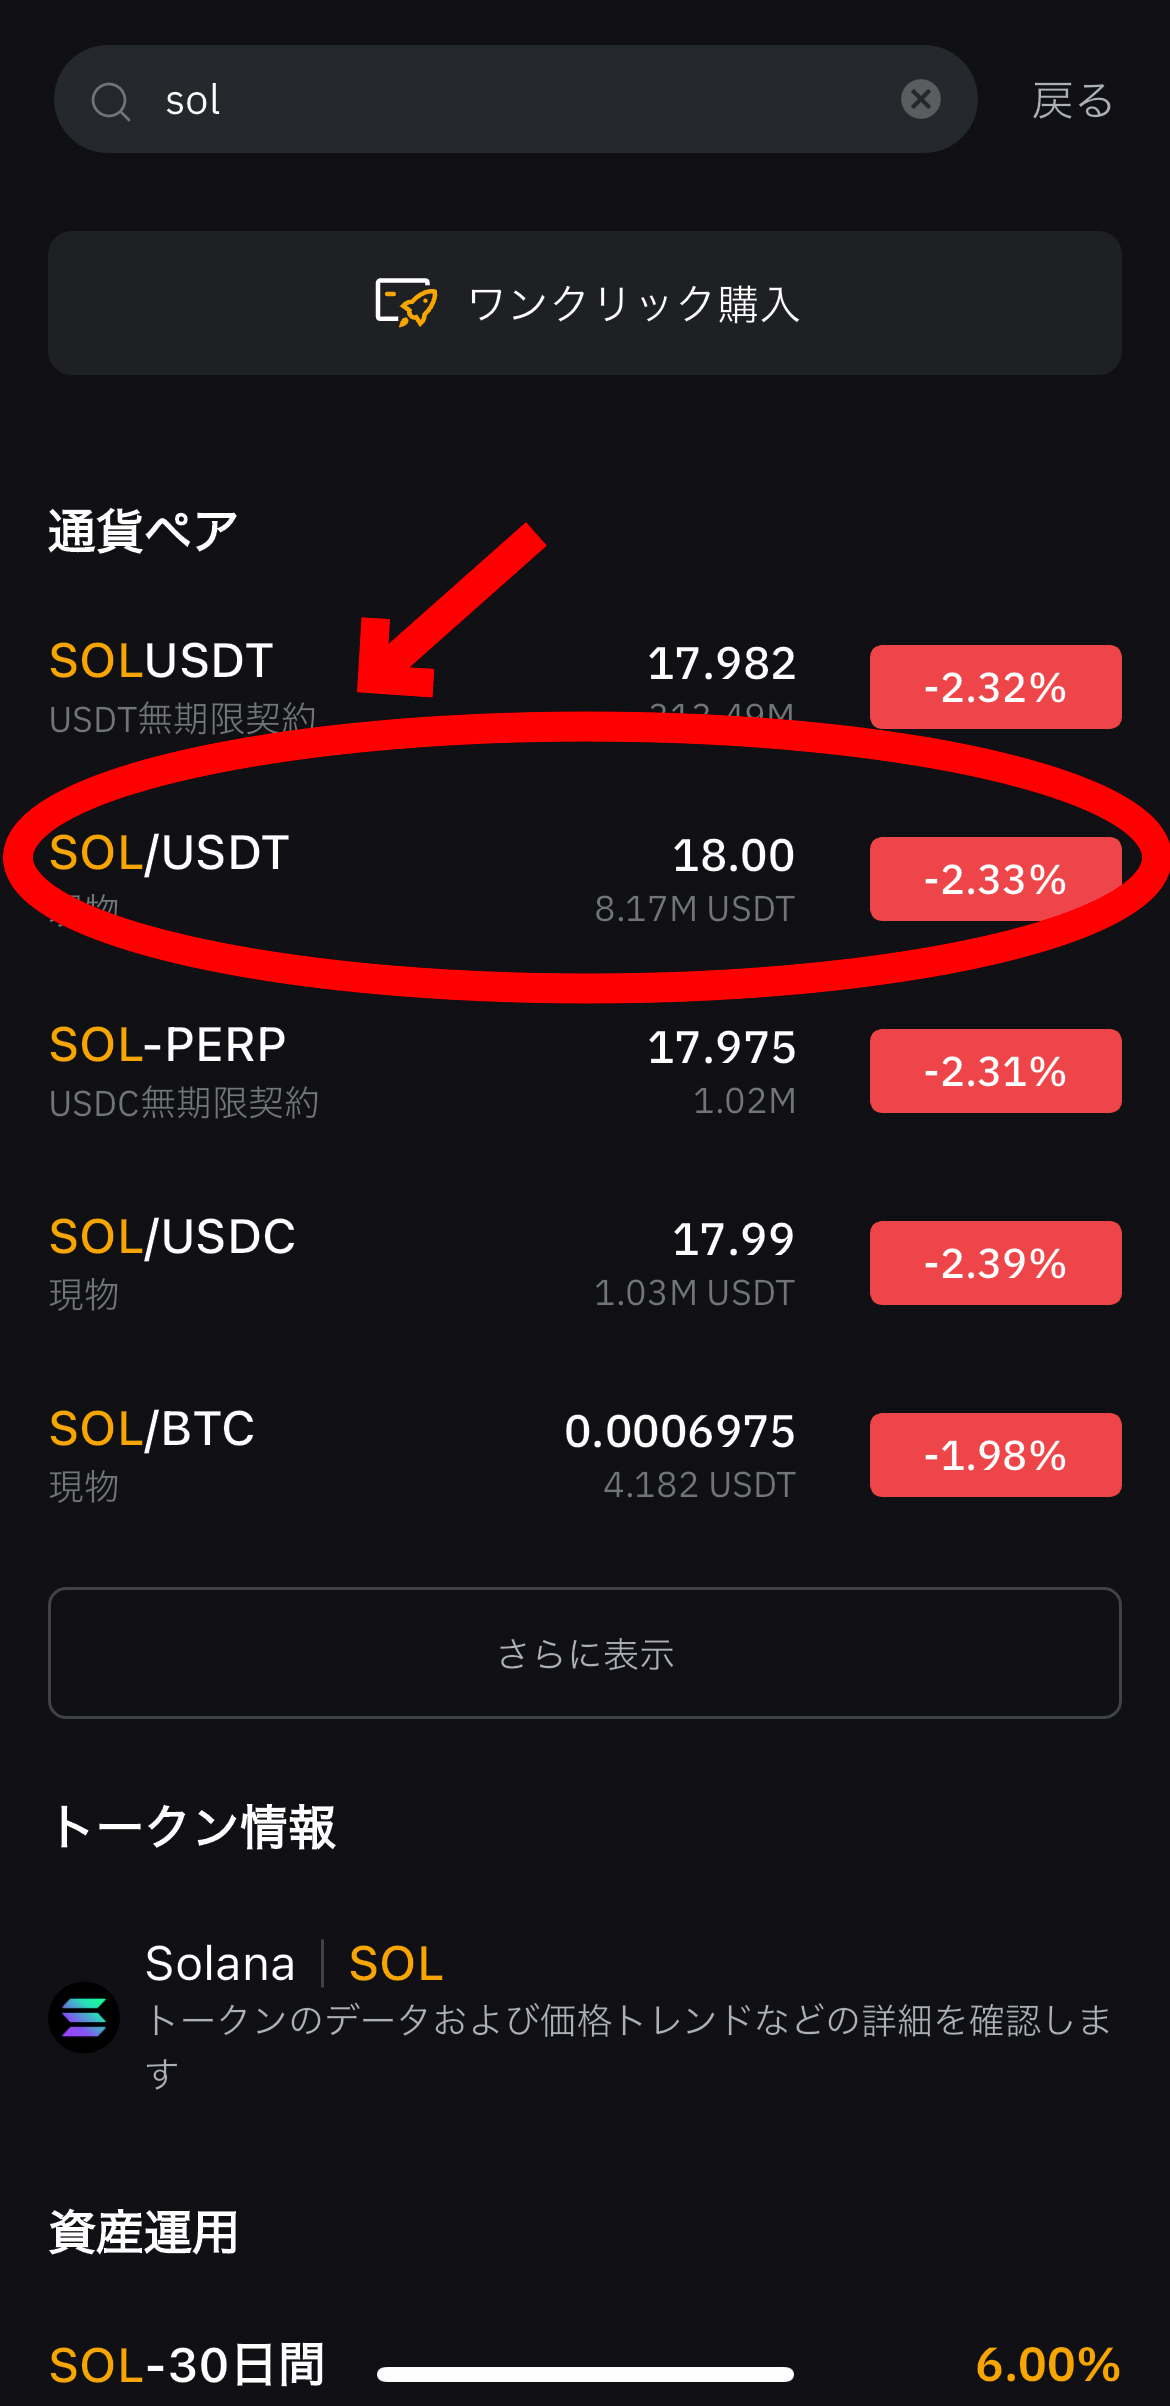 ソラナの買い方、ステーキング方法【SOL】【Bybit】【バイビット】【暗号資産】【仮想通貨】SOL/USDT（現物）を選択します